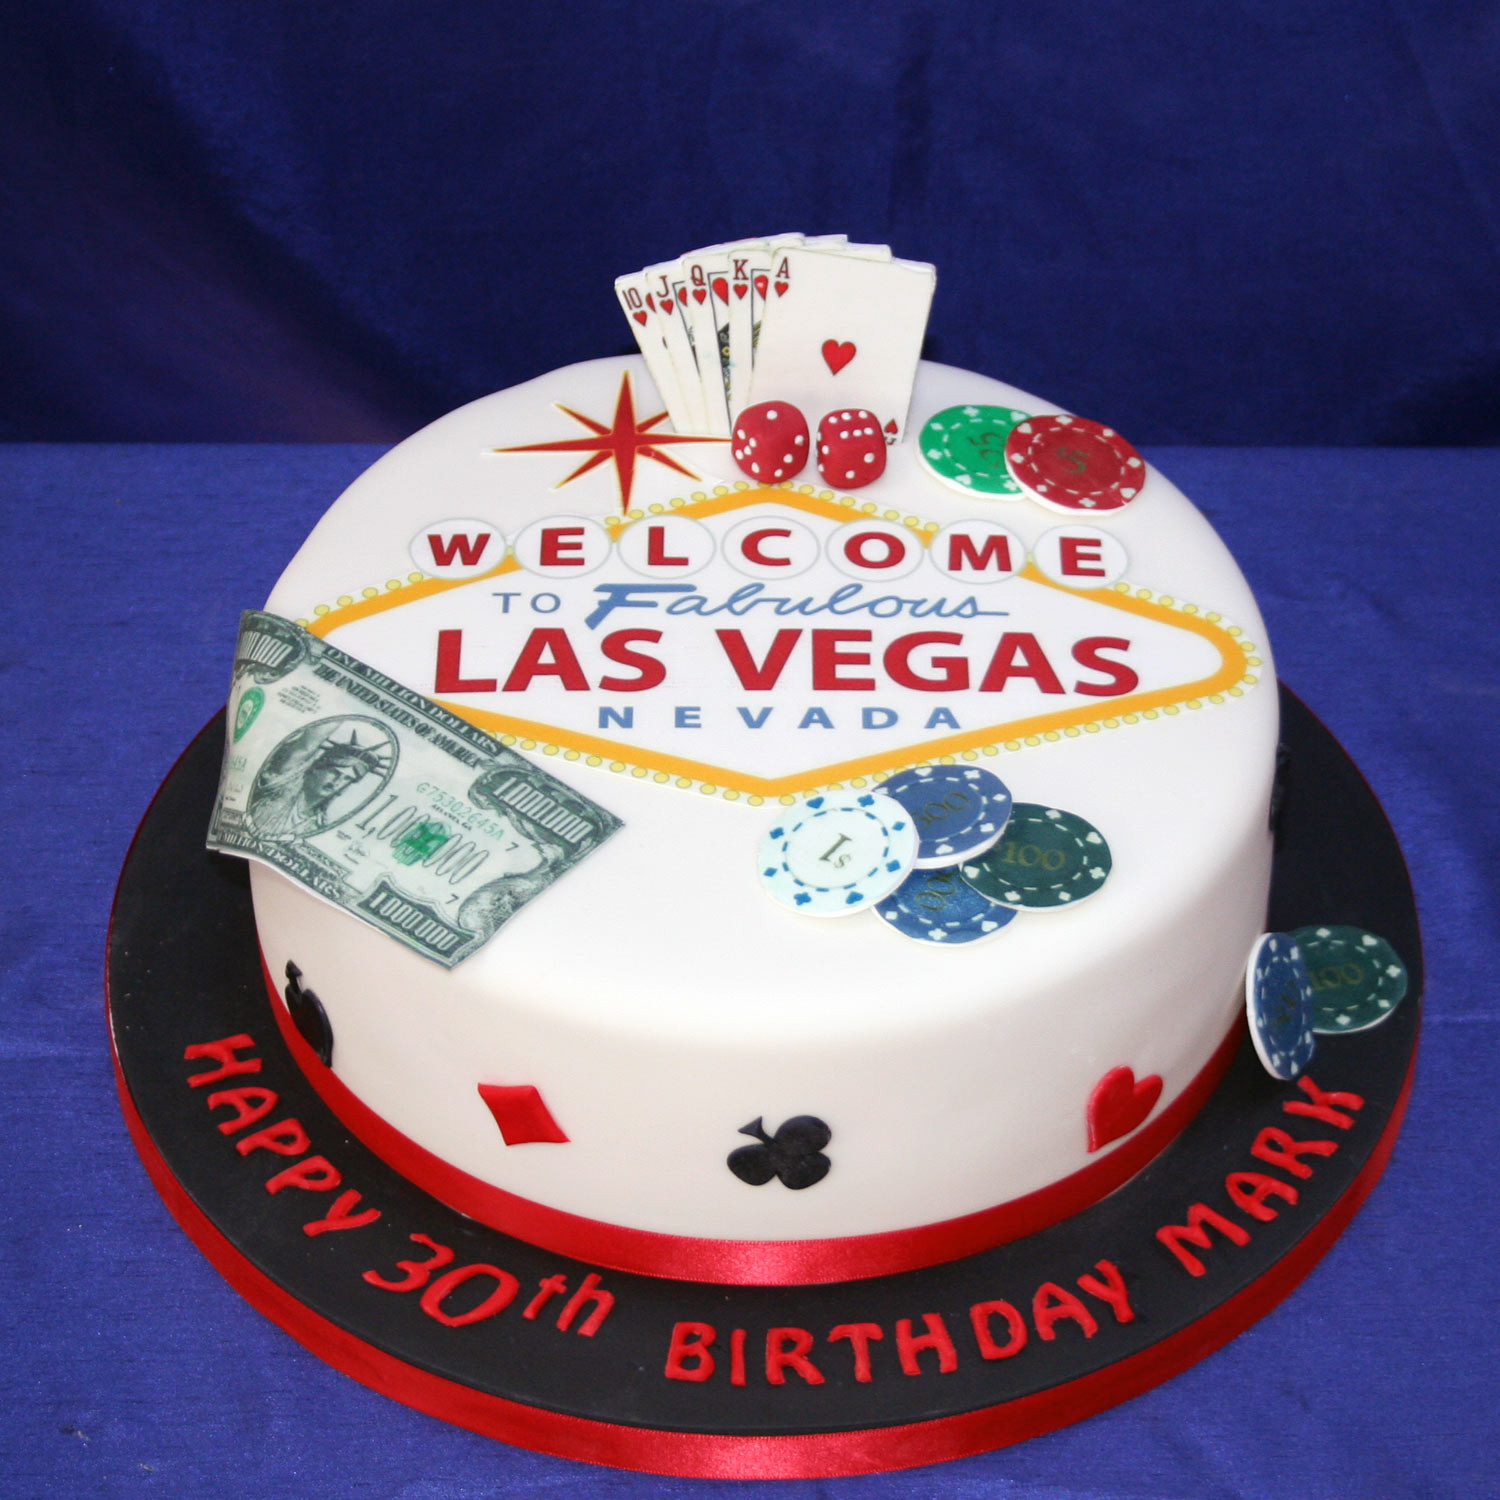 Birthday Cakes Las Vegas
 Las Vegas Birthday Cake Las Vegas Themed Birthday Cake